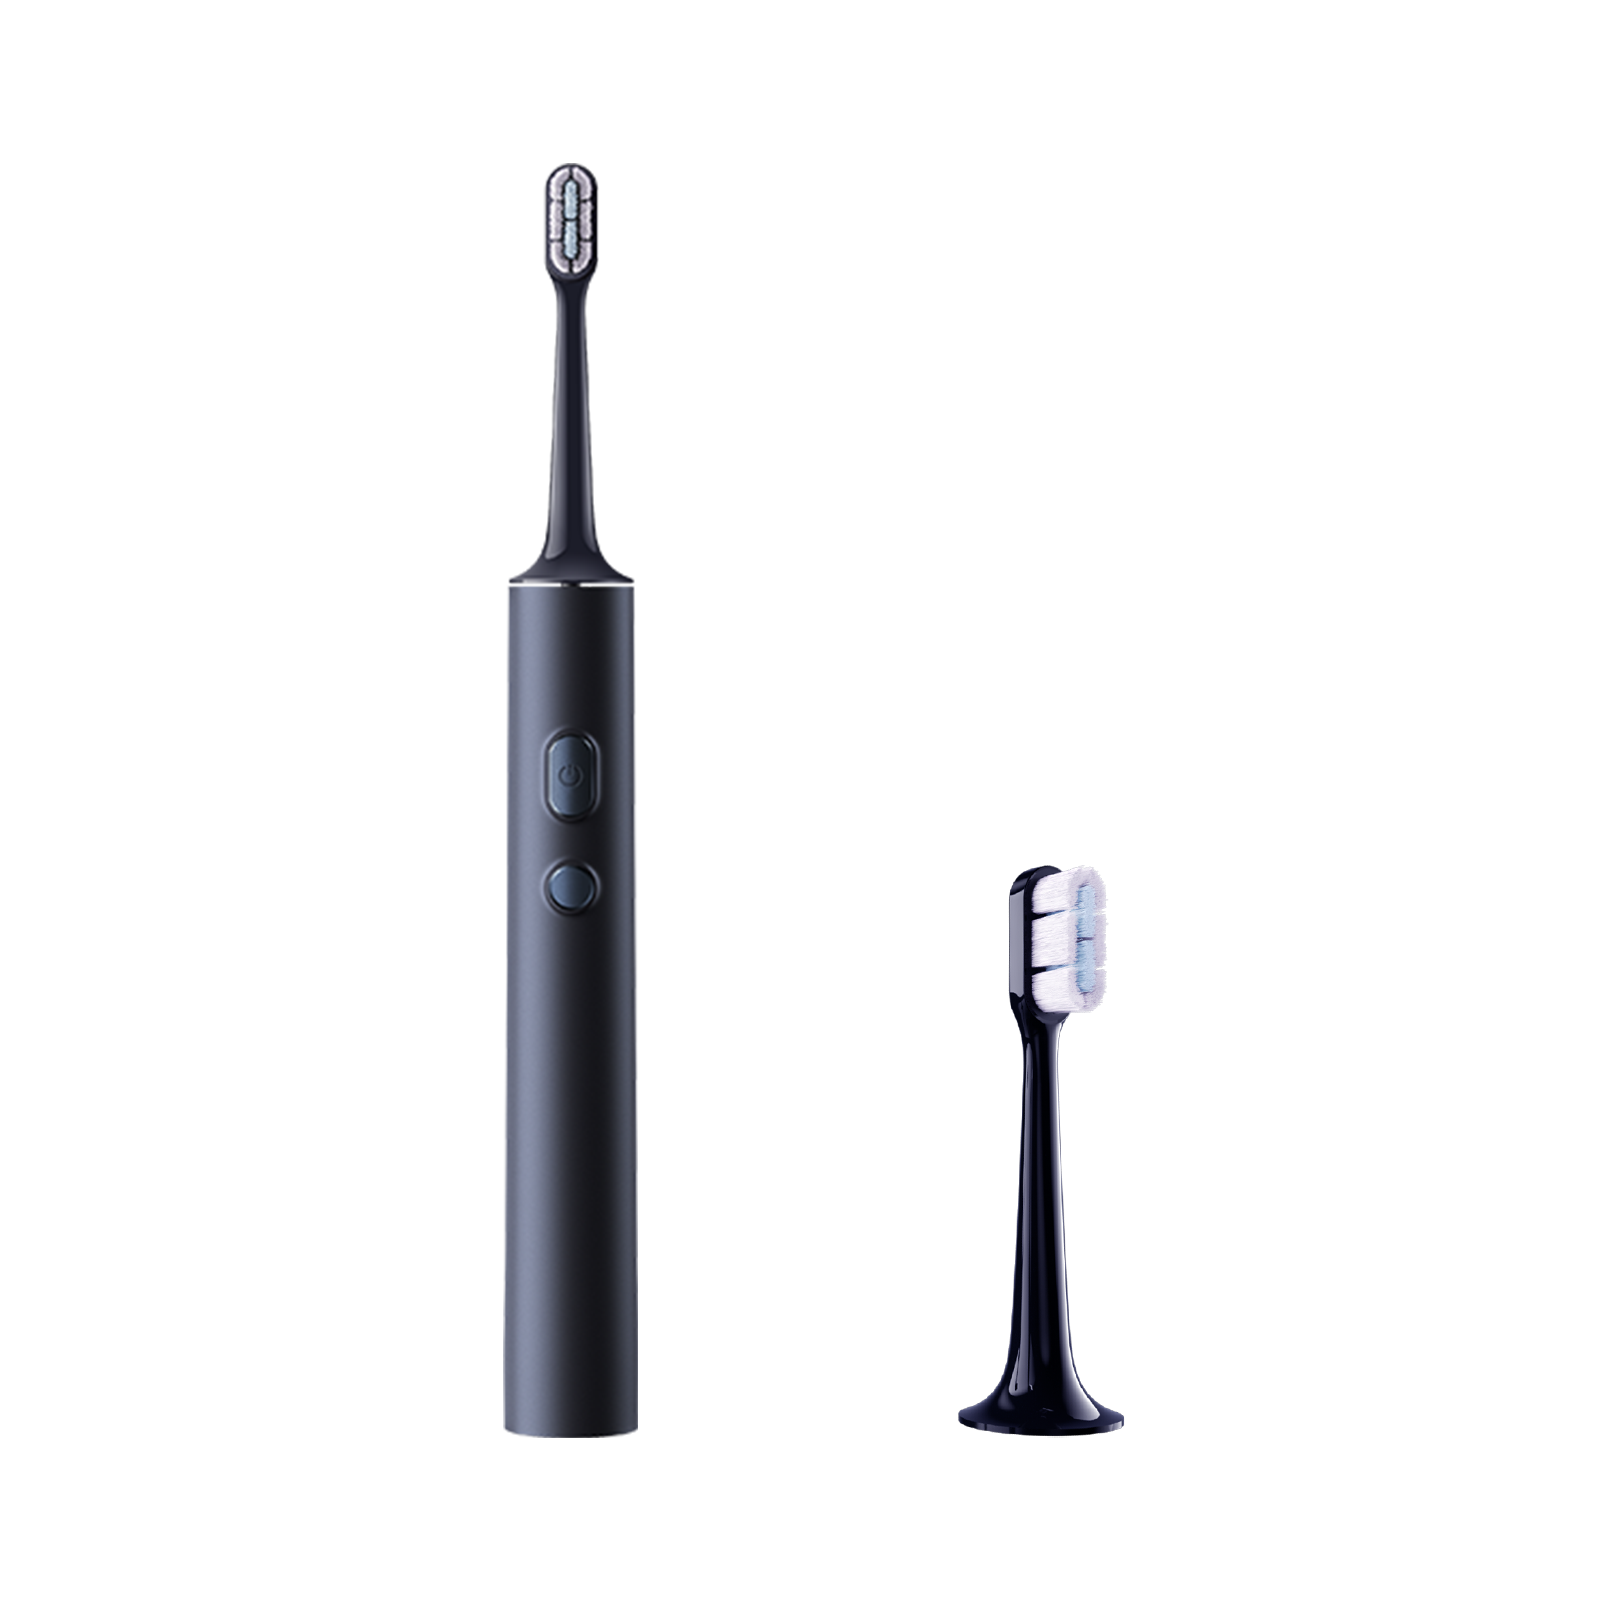 (КОМПЛЕКТ) Xiaomi Electric Toothbrush T700 + Electric Toothbrush T700 Replacement Heads